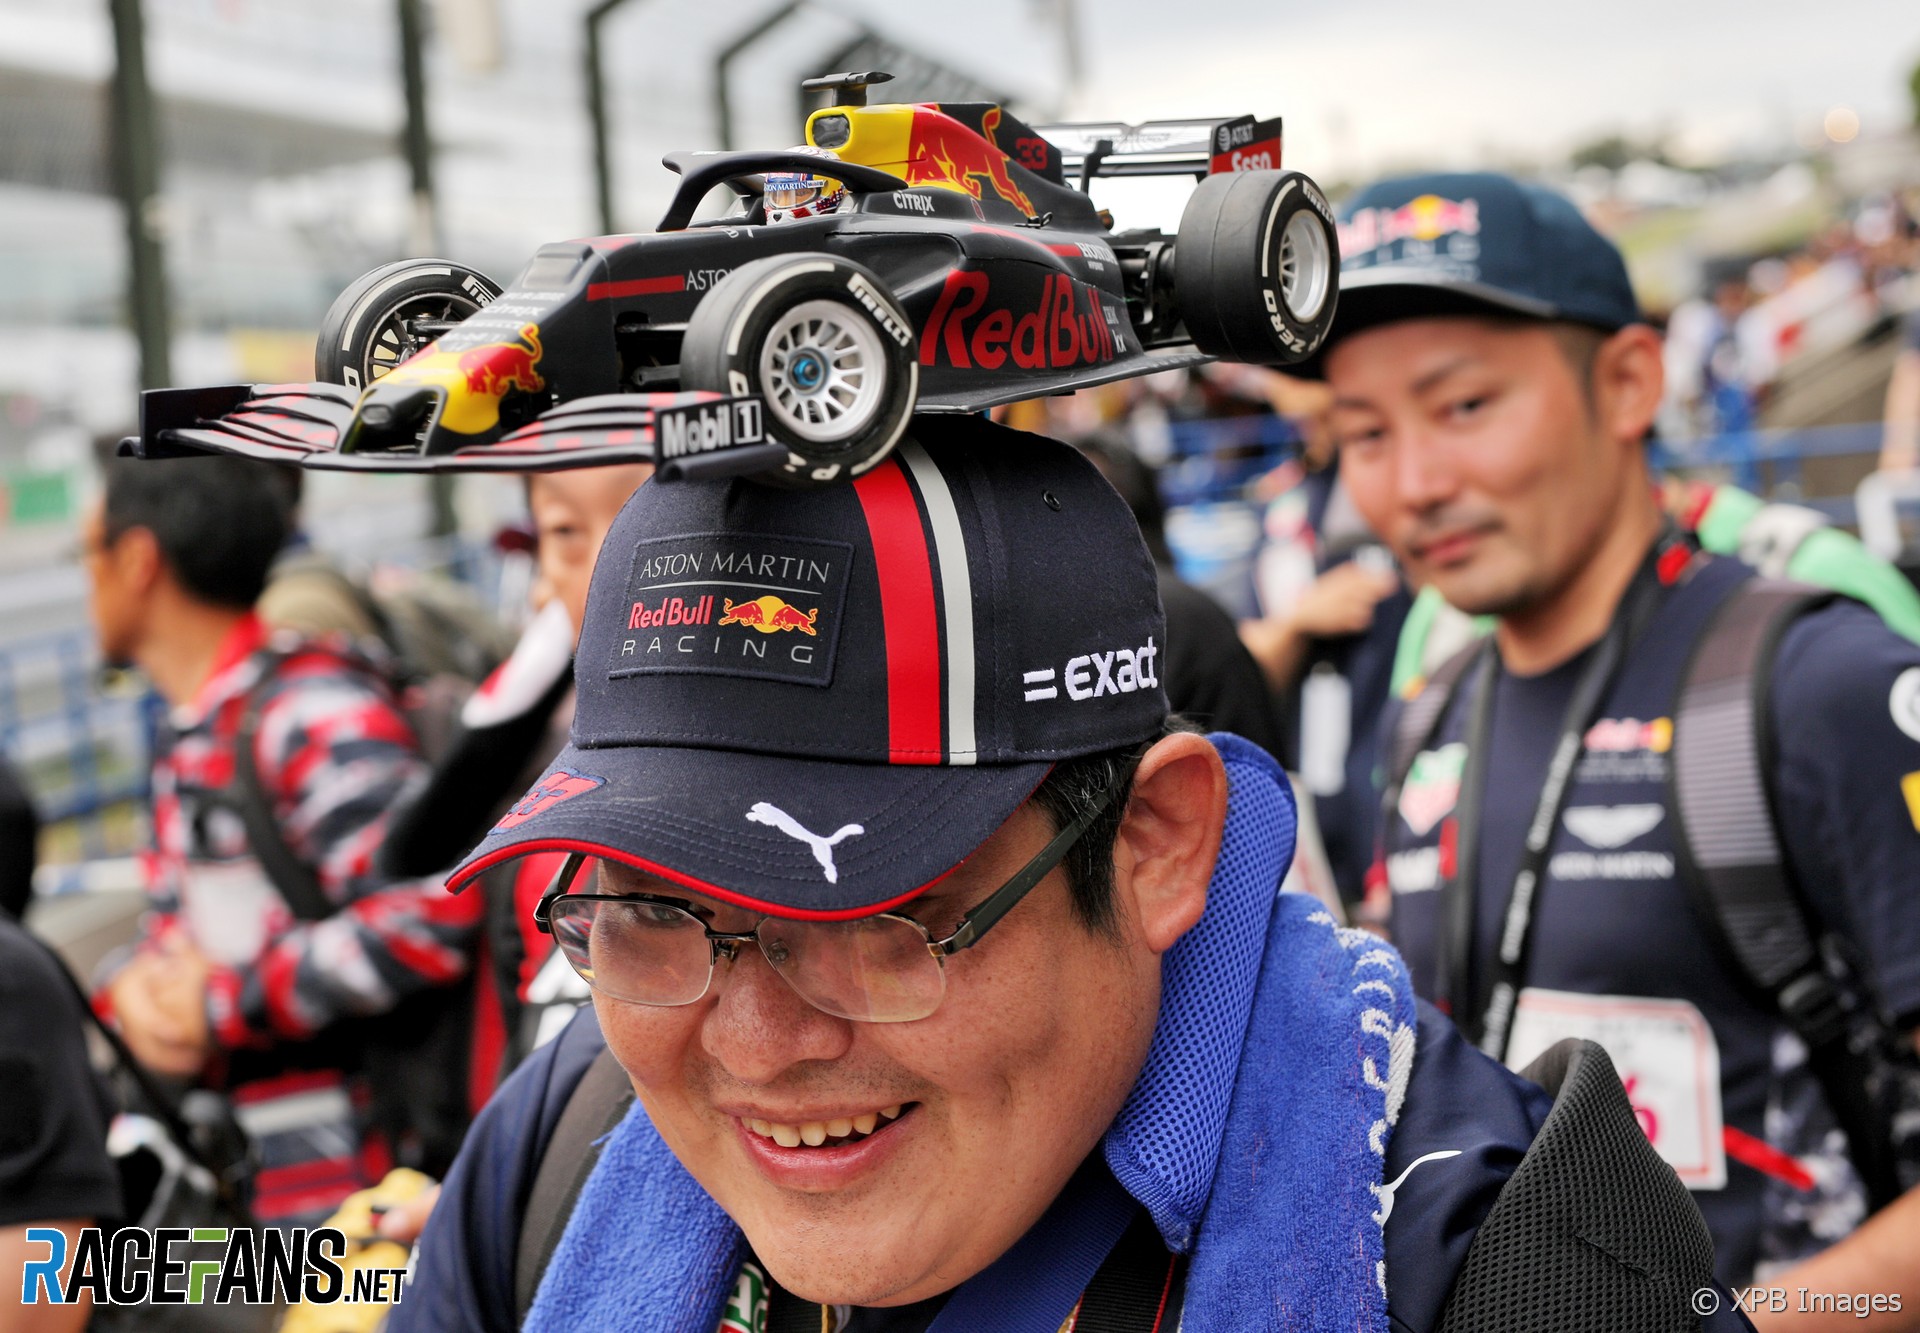 Red Bull fan, Suzuka, 2019